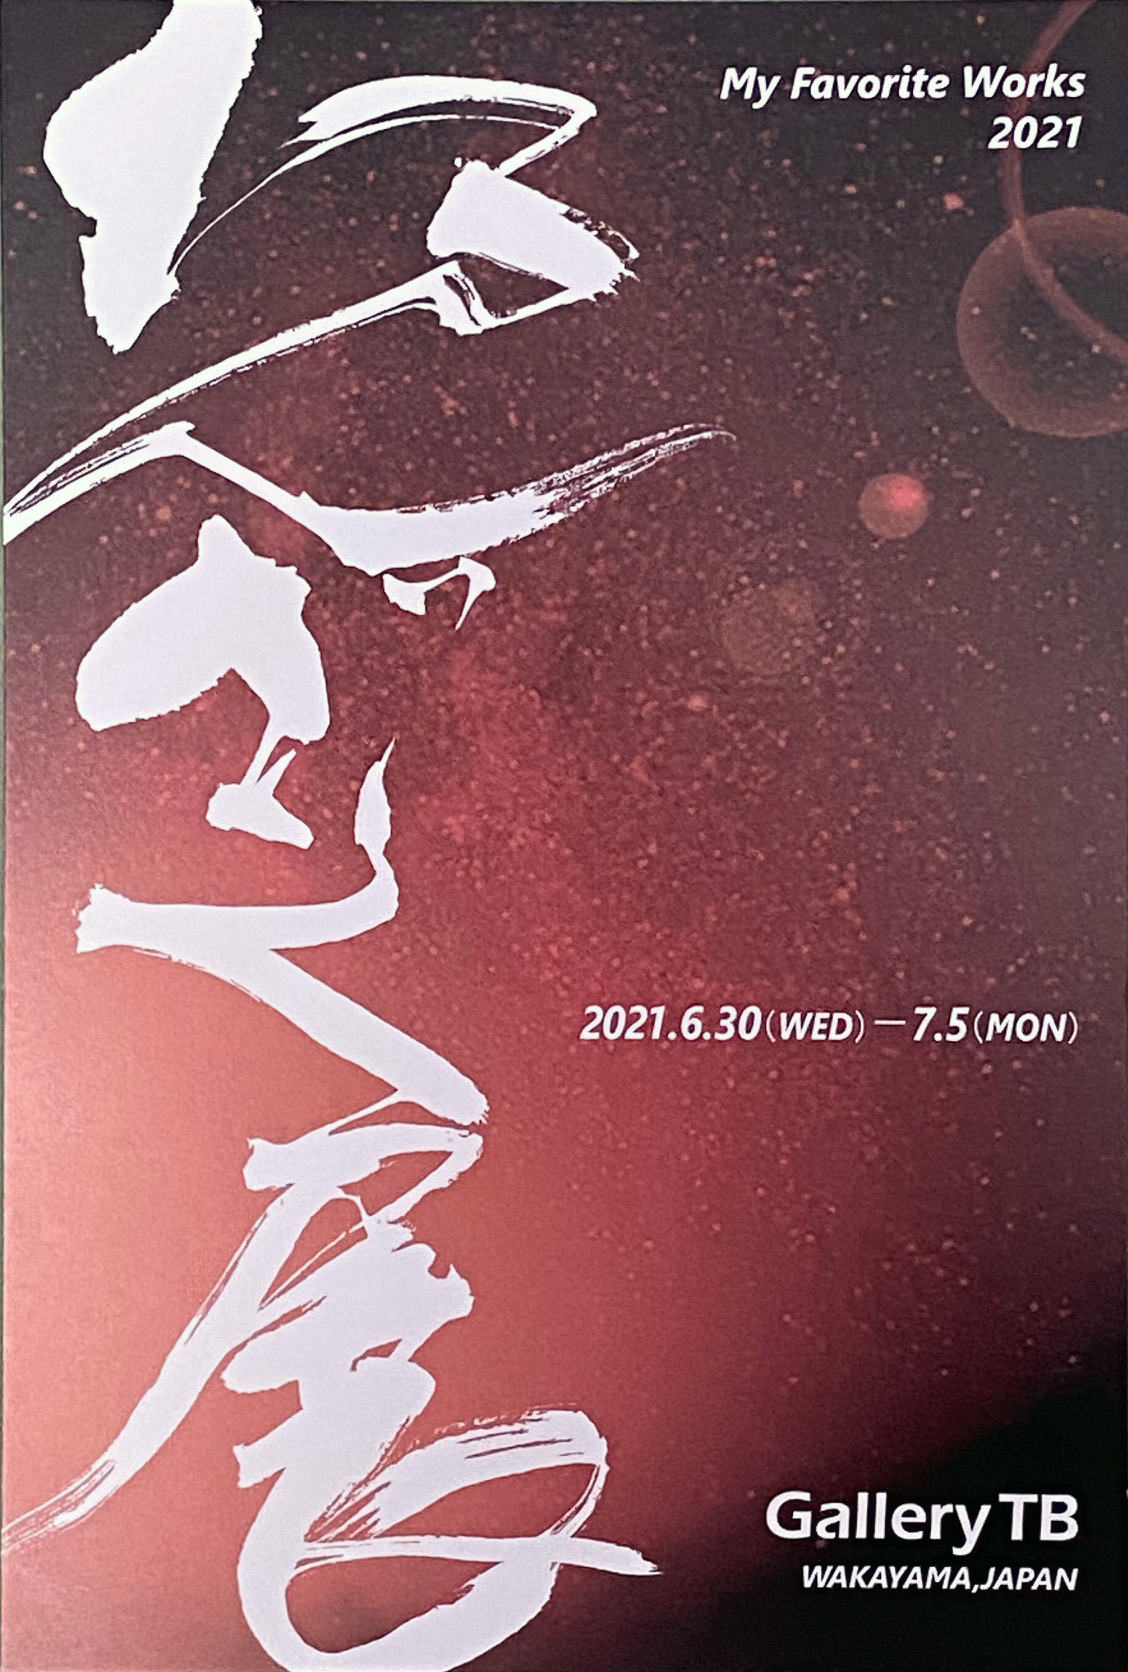 2021.06.19｜たんざく展｜和歌山市のGallery TBで「たんざく展」が開催されます。<br><br>会期　2021年6月30日(水)～7月5日(月)<br>会場　Gallery TB